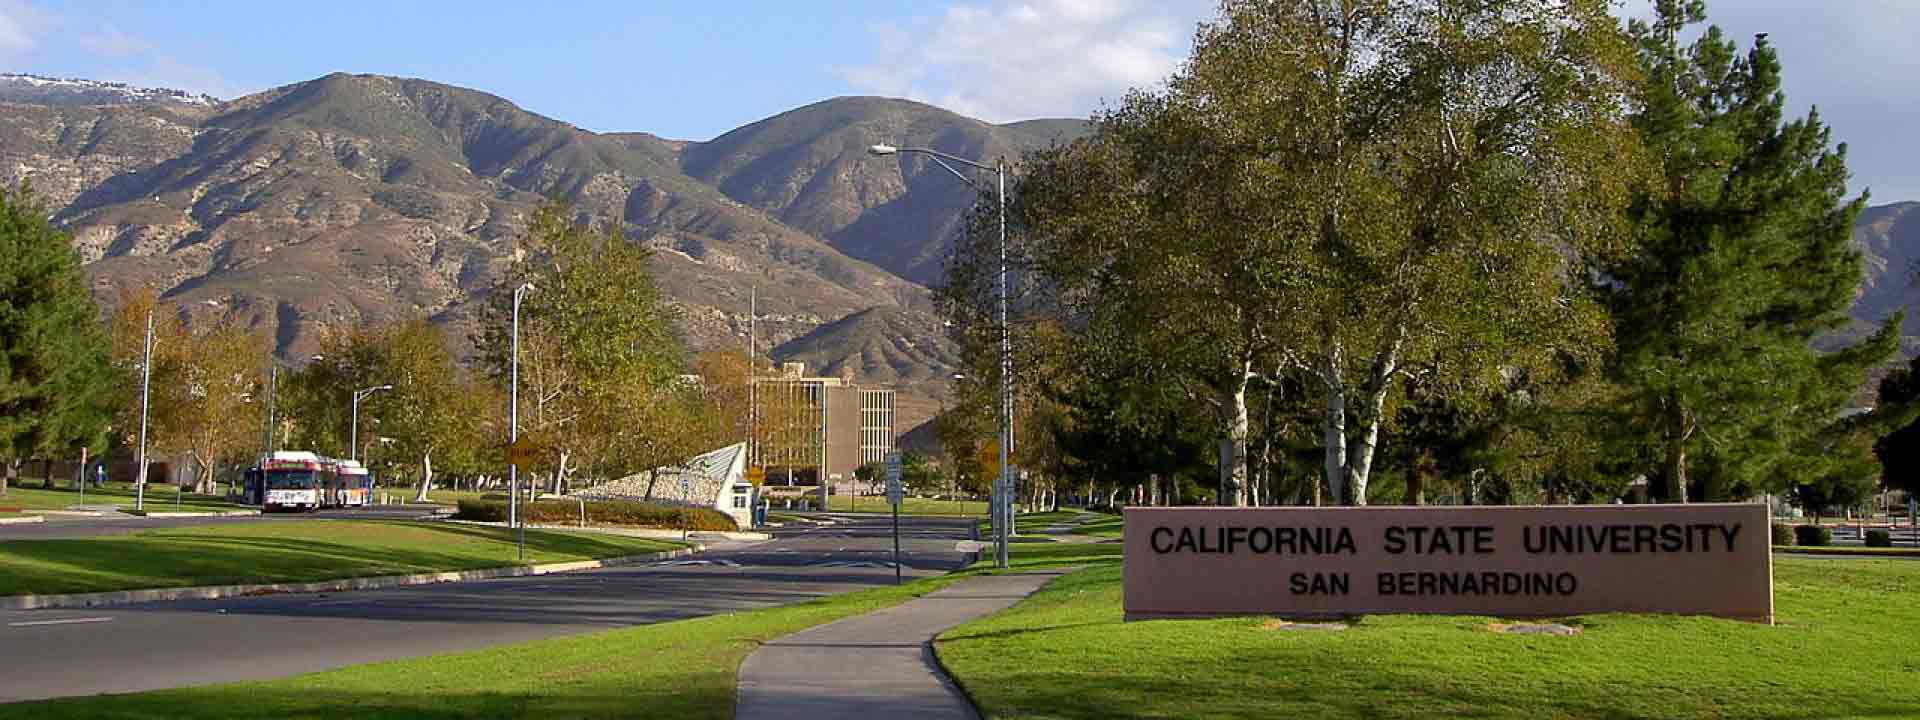 california-state-university-san-bernardino